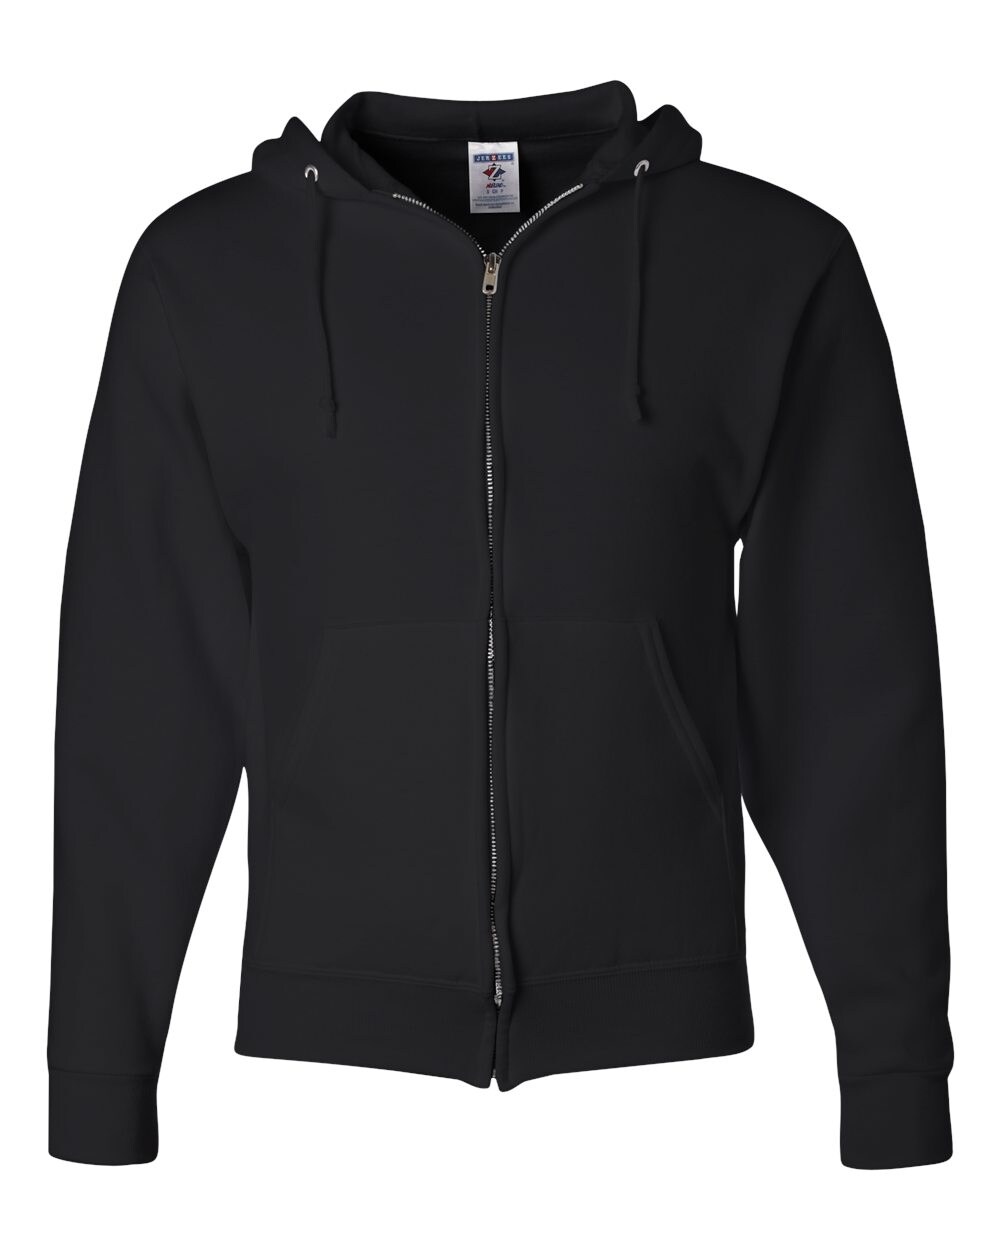 JERZEES® NuBlend Full-Zip Hooded Sweatshirt